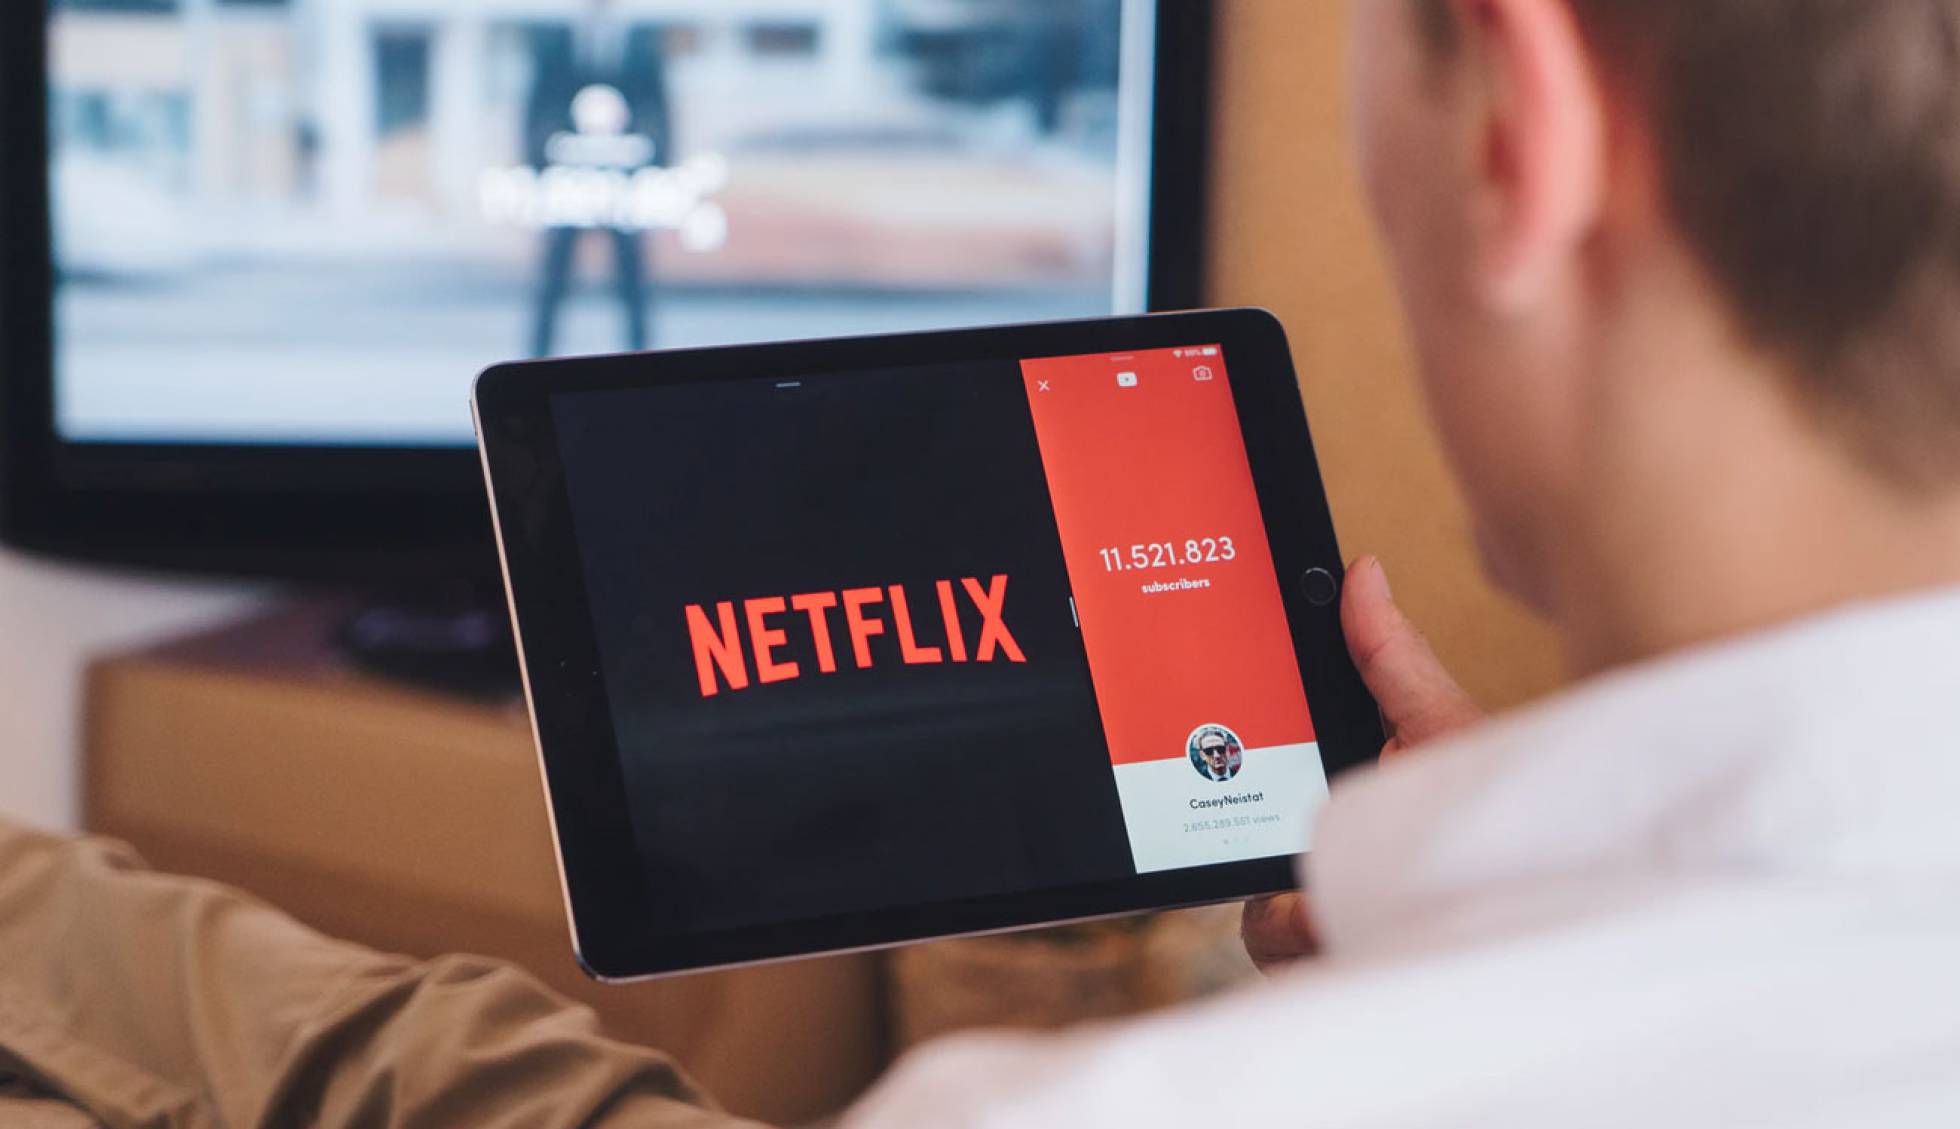 Cómo reproducir el contenido de Netflix siempre a la máxima resolución